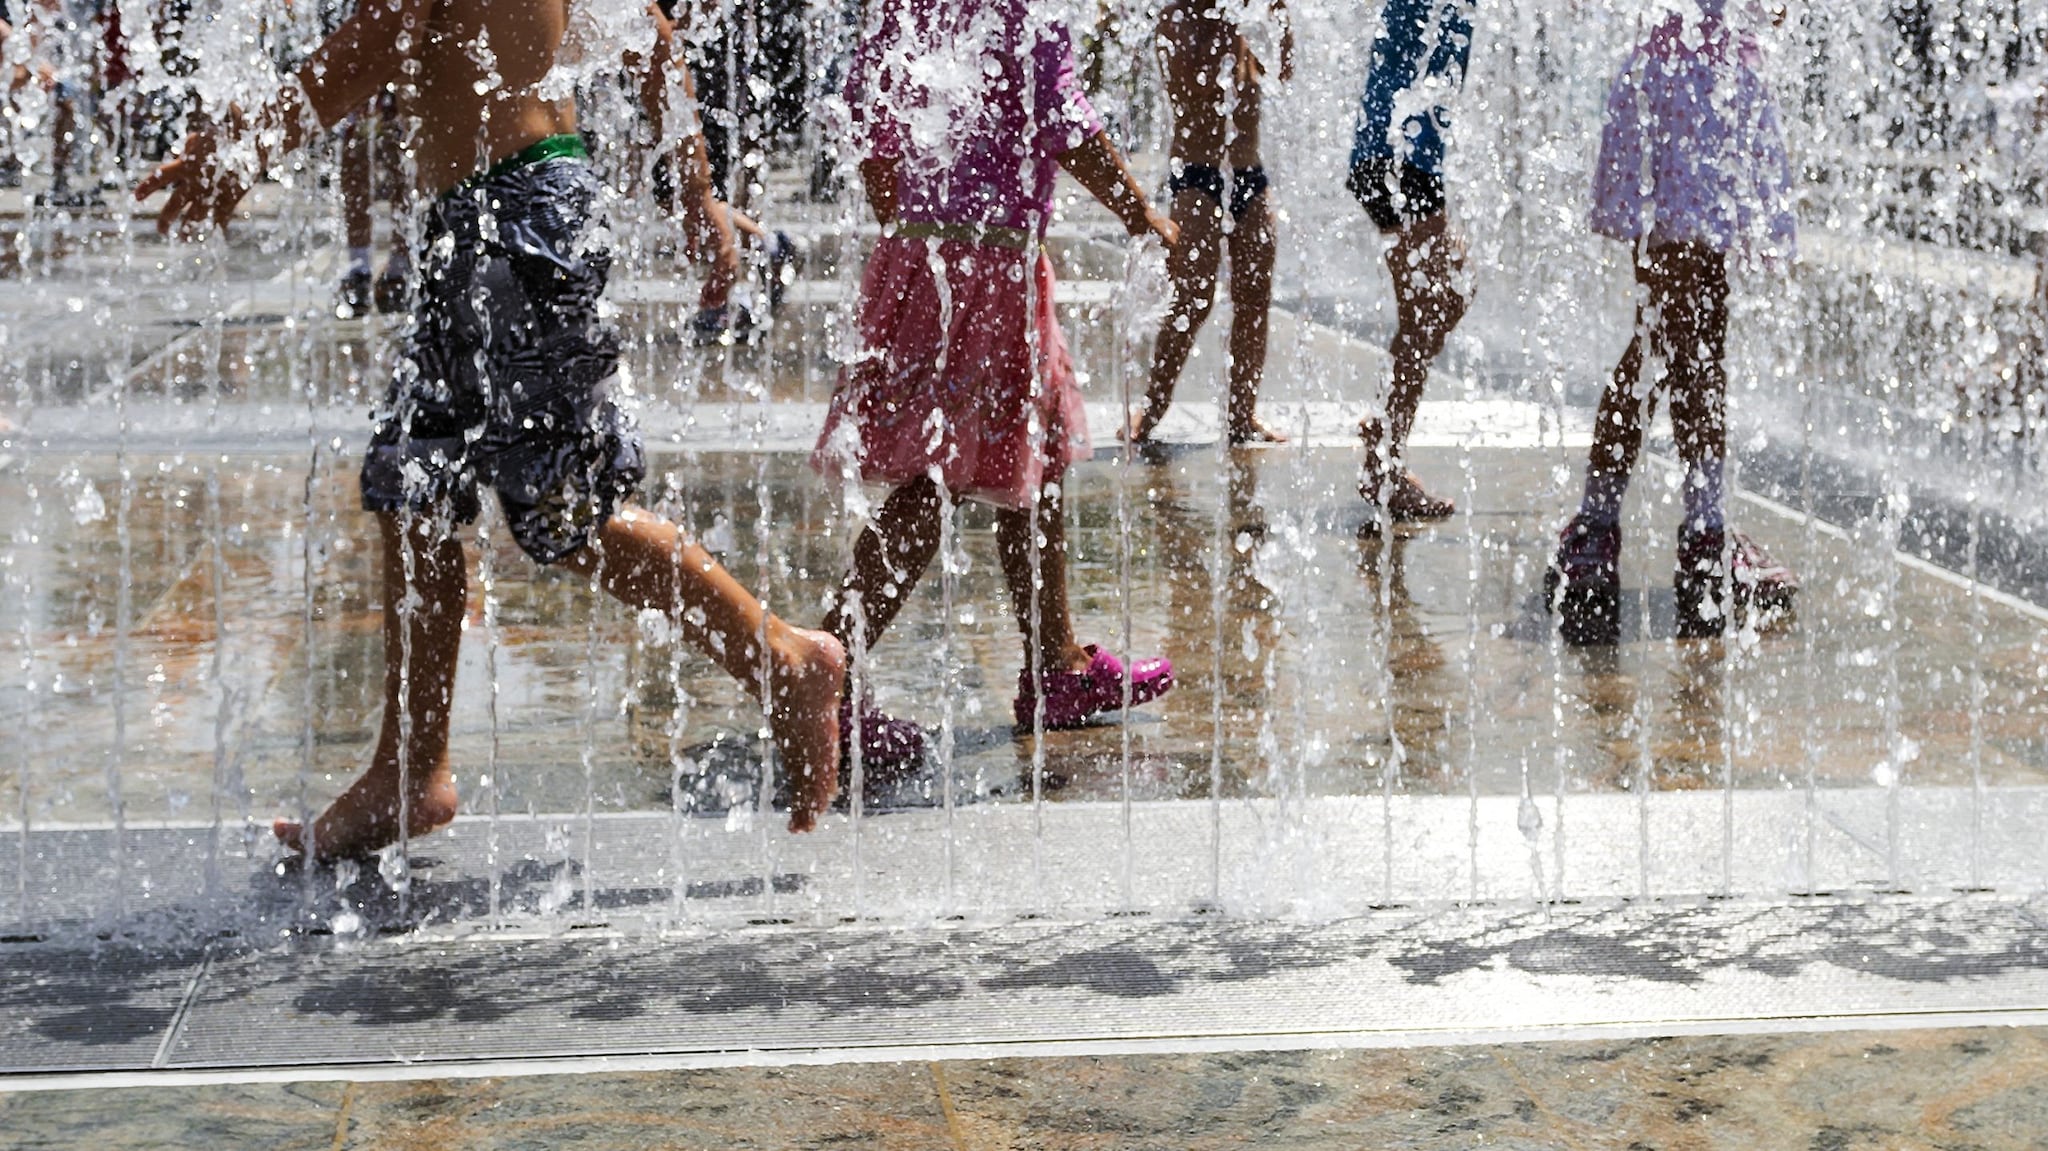 Children playing in a splash fountain